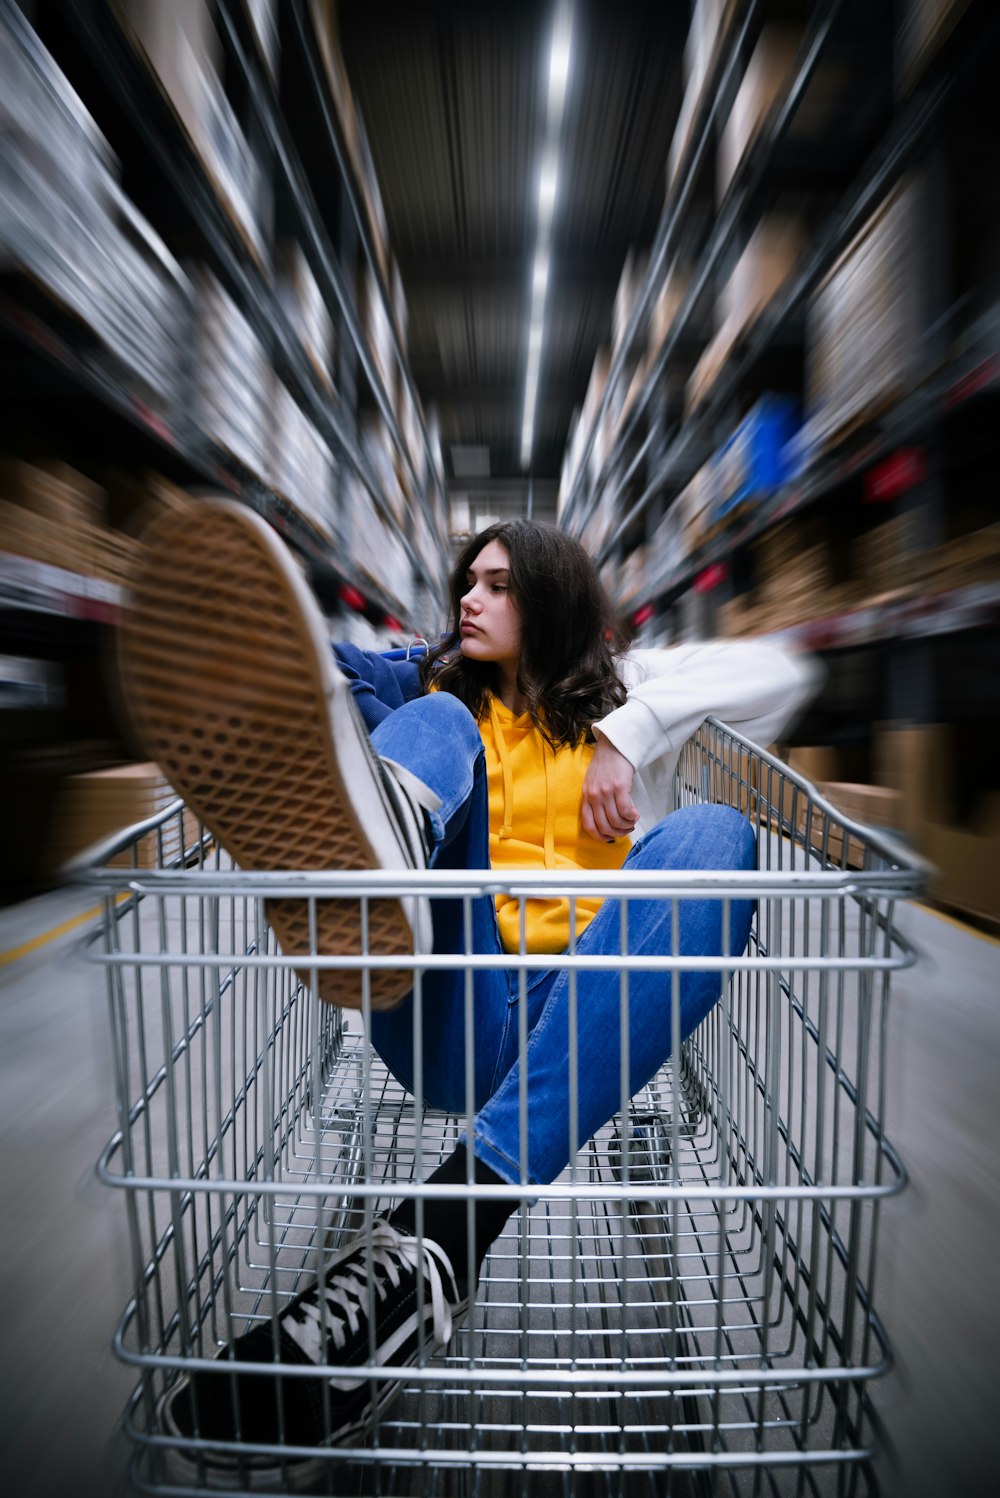 Photographie sélective d’une femme chevauchant un chariot de supermarché dans un entrepôt